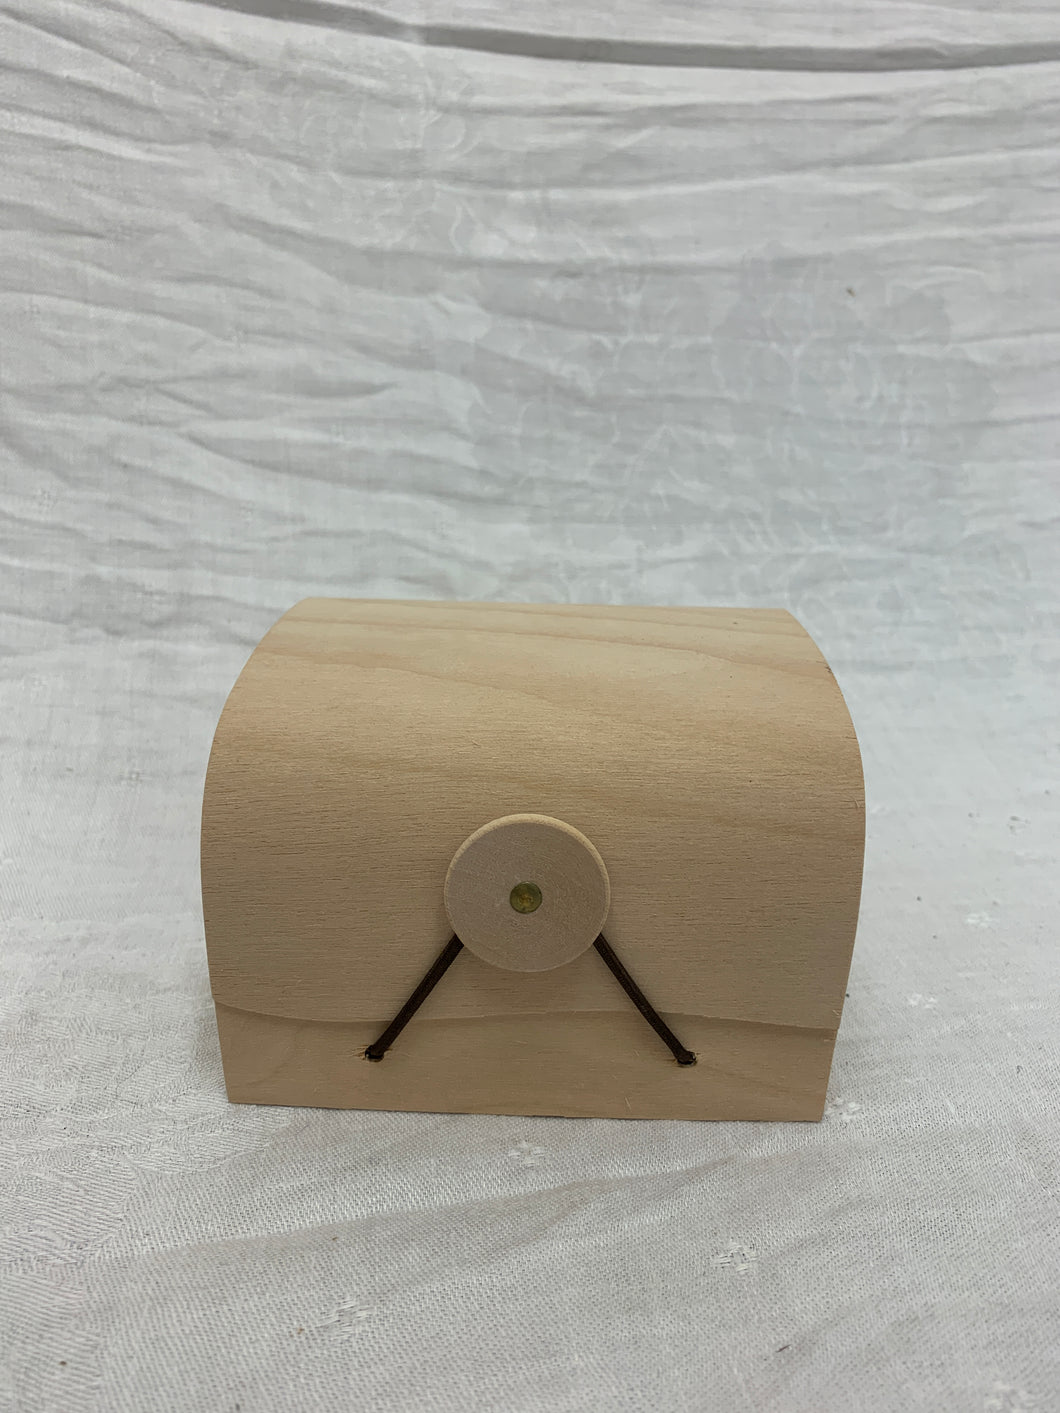 birch wood box - mini (4.5